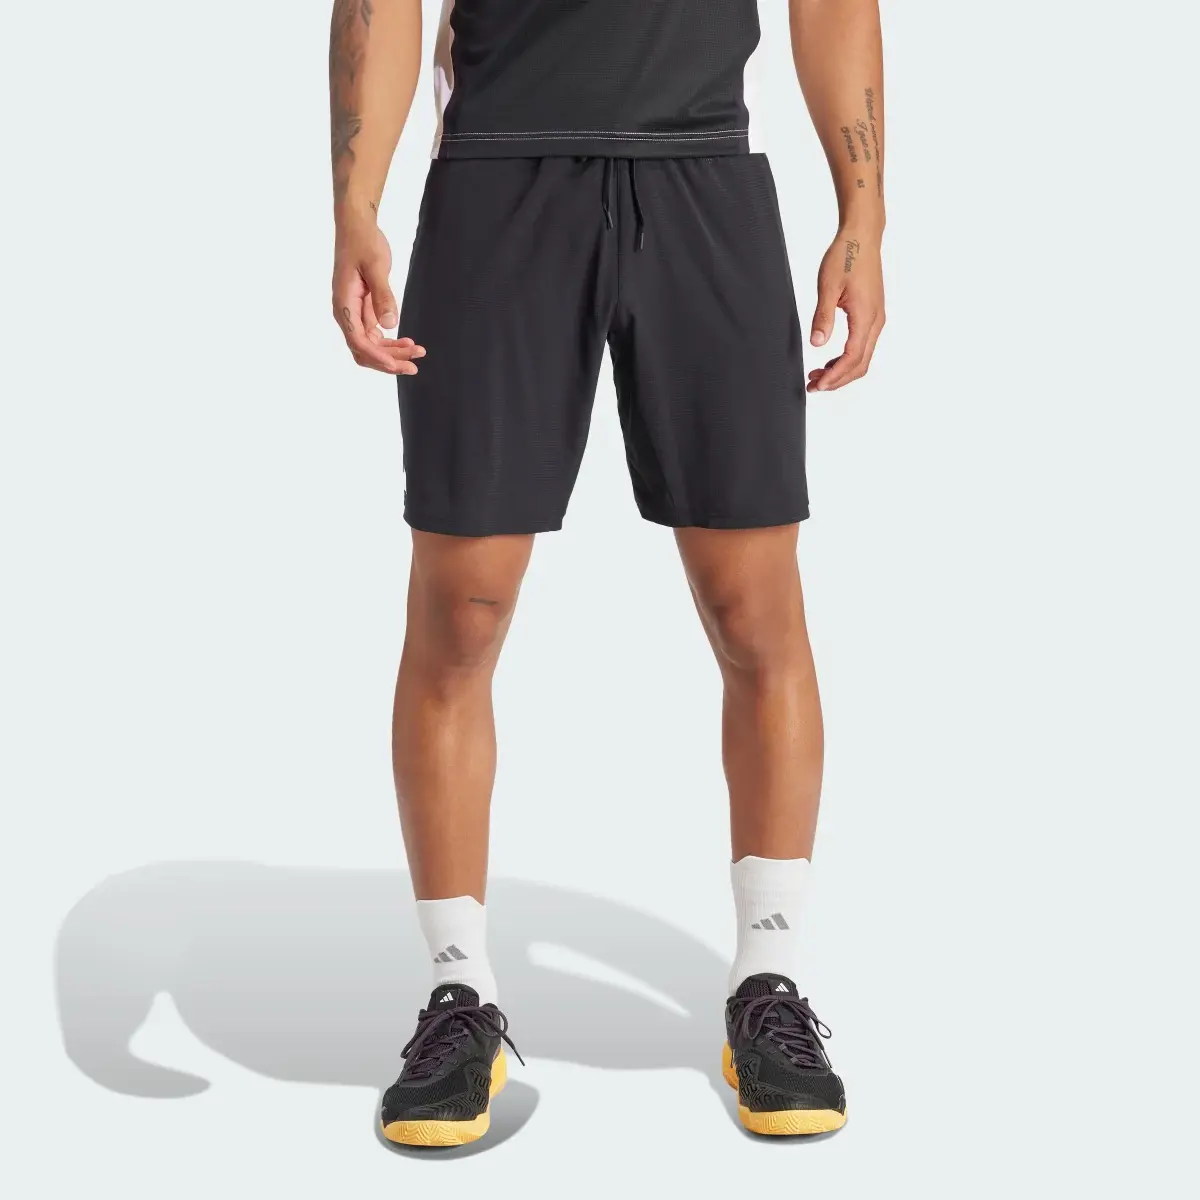 Adidas Shorts Ergo para Tenis. 2